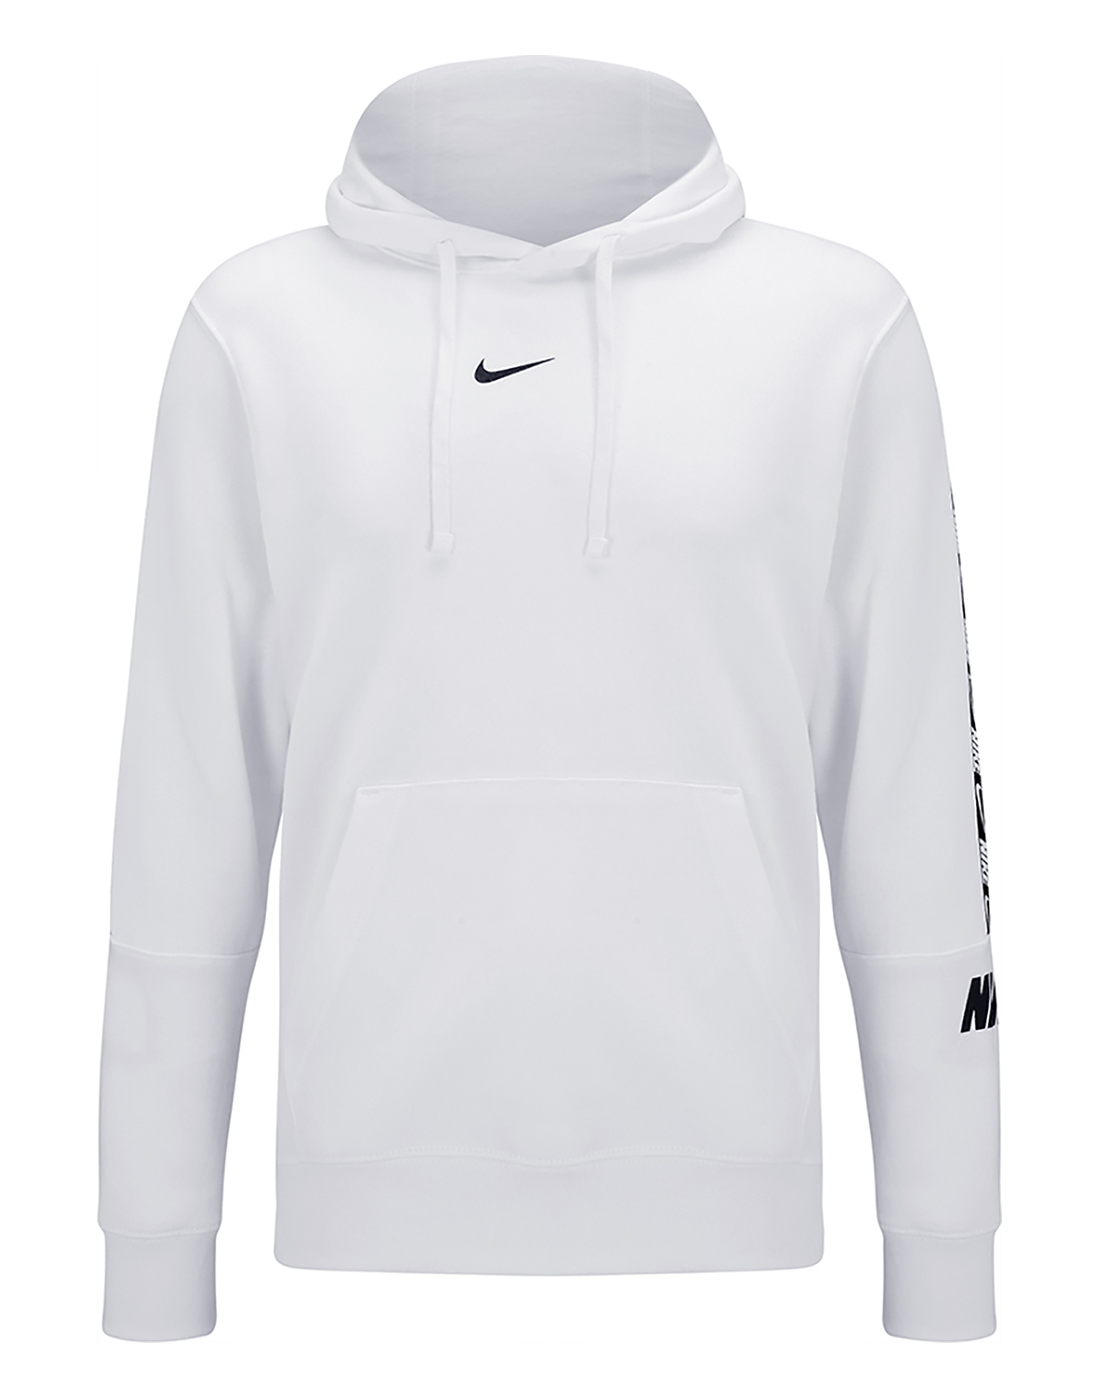 Nike Mens Repeat Taping Fleece Hoodie - White | Life Style Sports EU